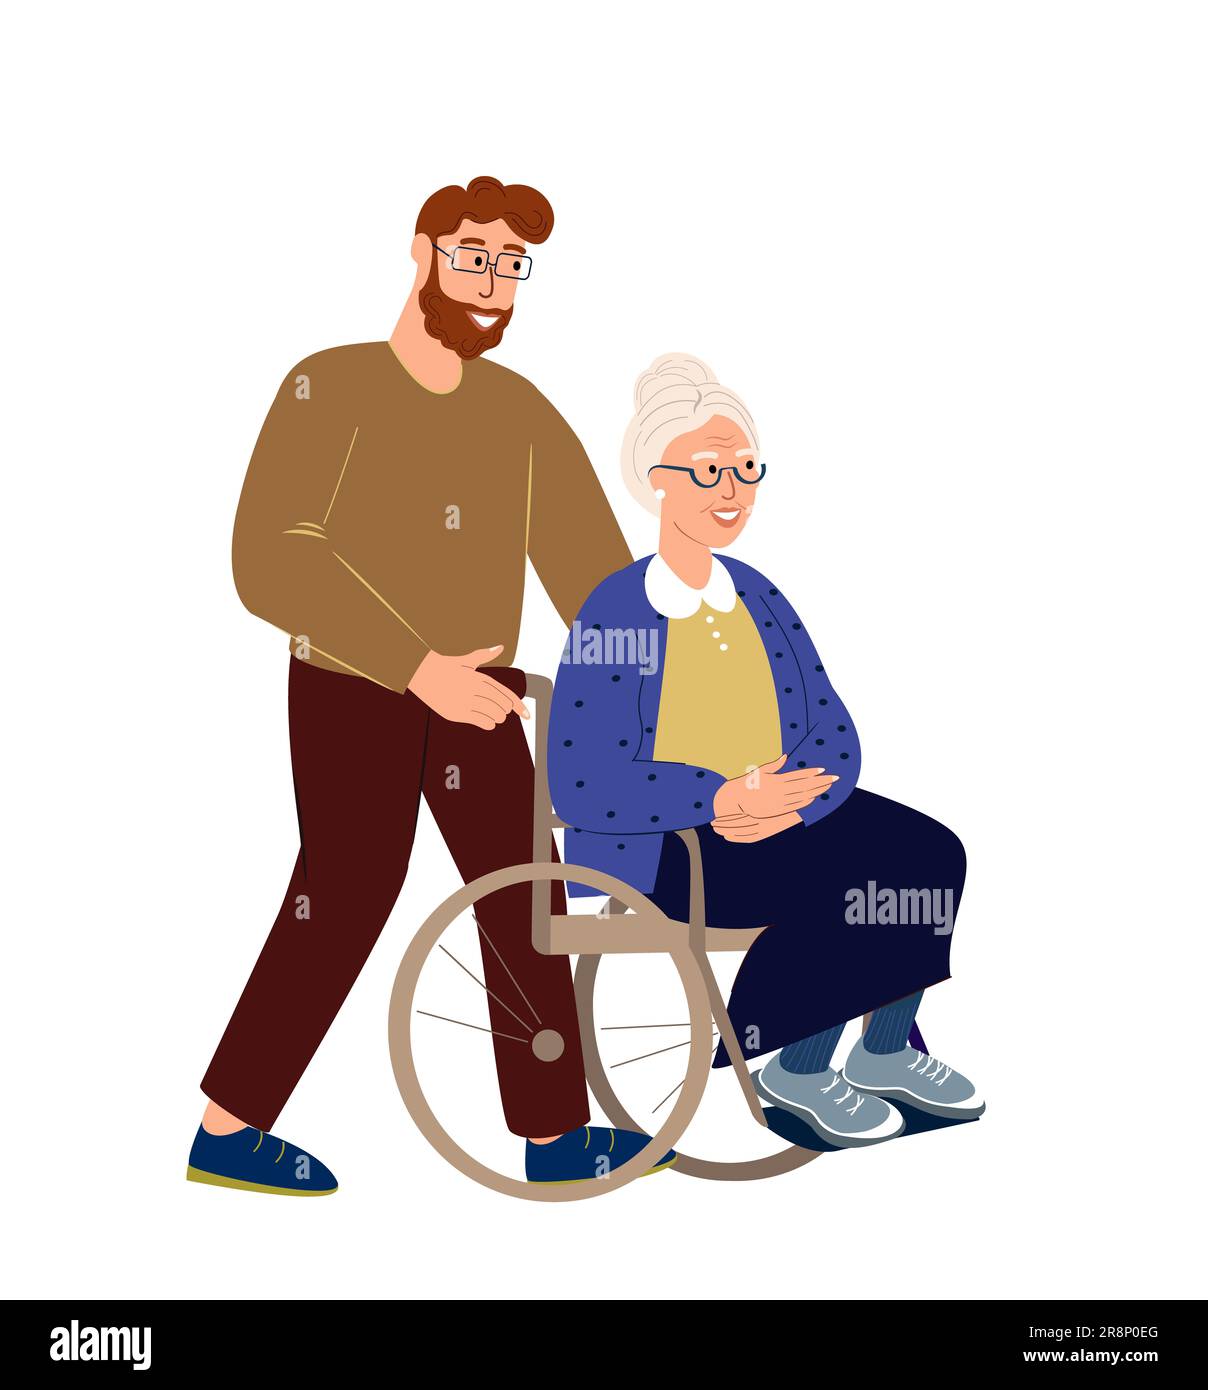 Adult Son amorevole cavalcando la sua vecchia nonna disabile nella sedia a rotelle che tiene, supportando il concetto di supporto di her.Family Illustration.Son che si prende cura del suo seno Foto Stock